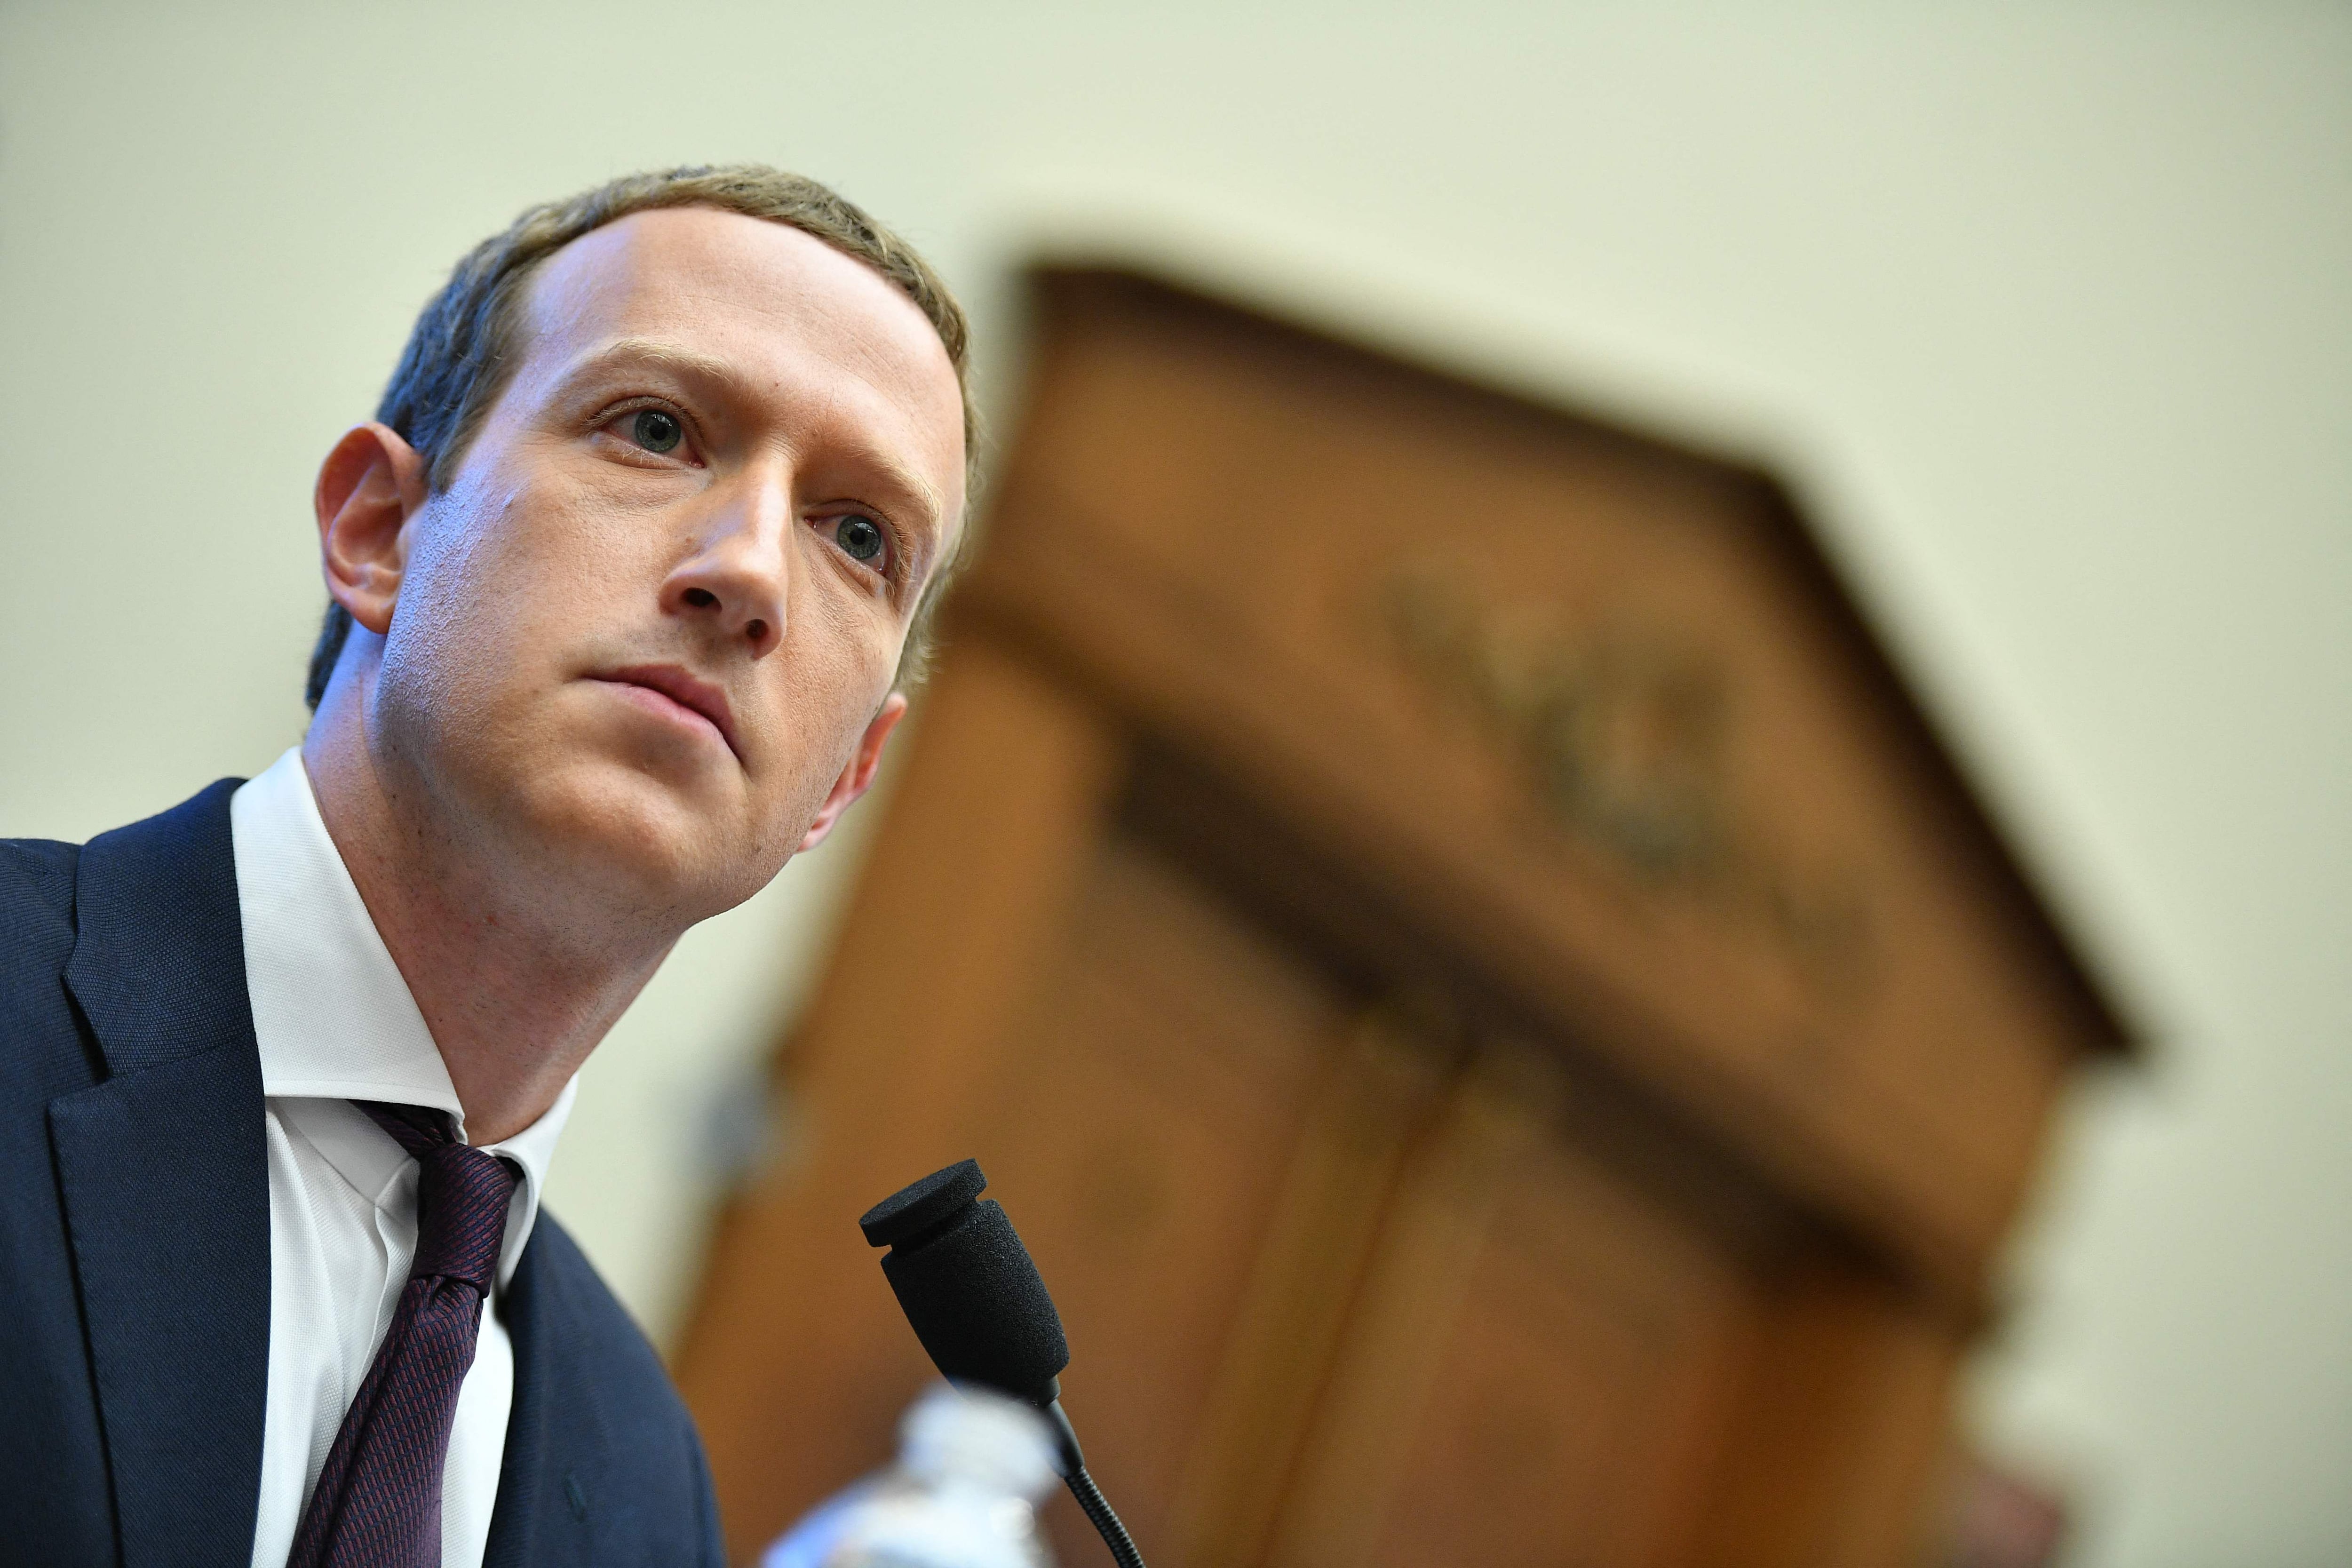 En una audiencia frente a miembros del Senado estadounidense, Mark Zuckerberg, el CEO de Meta, le pidió perdón a los padres presentes en la sala por el efecto que las redes sociales han tenido en la salud mental de sus hijos.